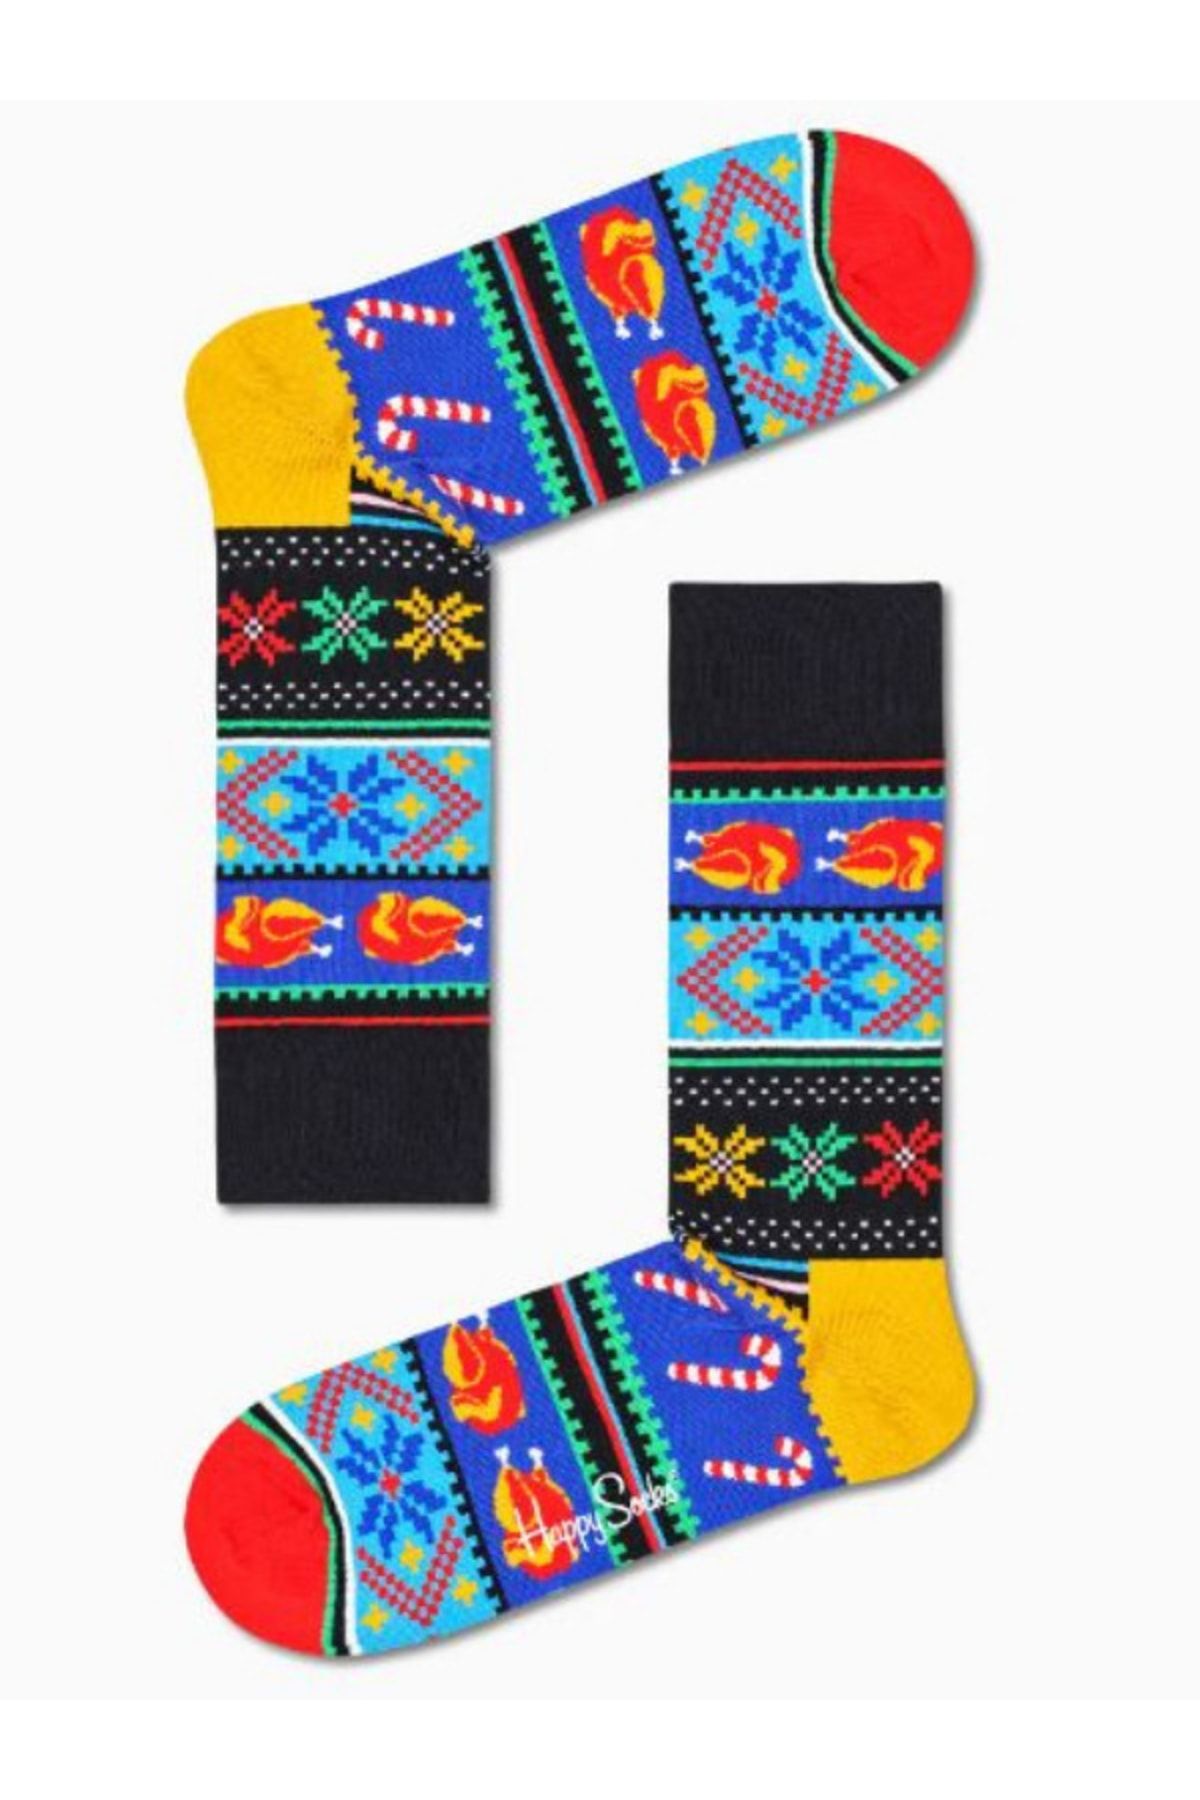 Happy Socks Ithal Özel Seri Unisex Renkli Soket Happy Holiday Çorap